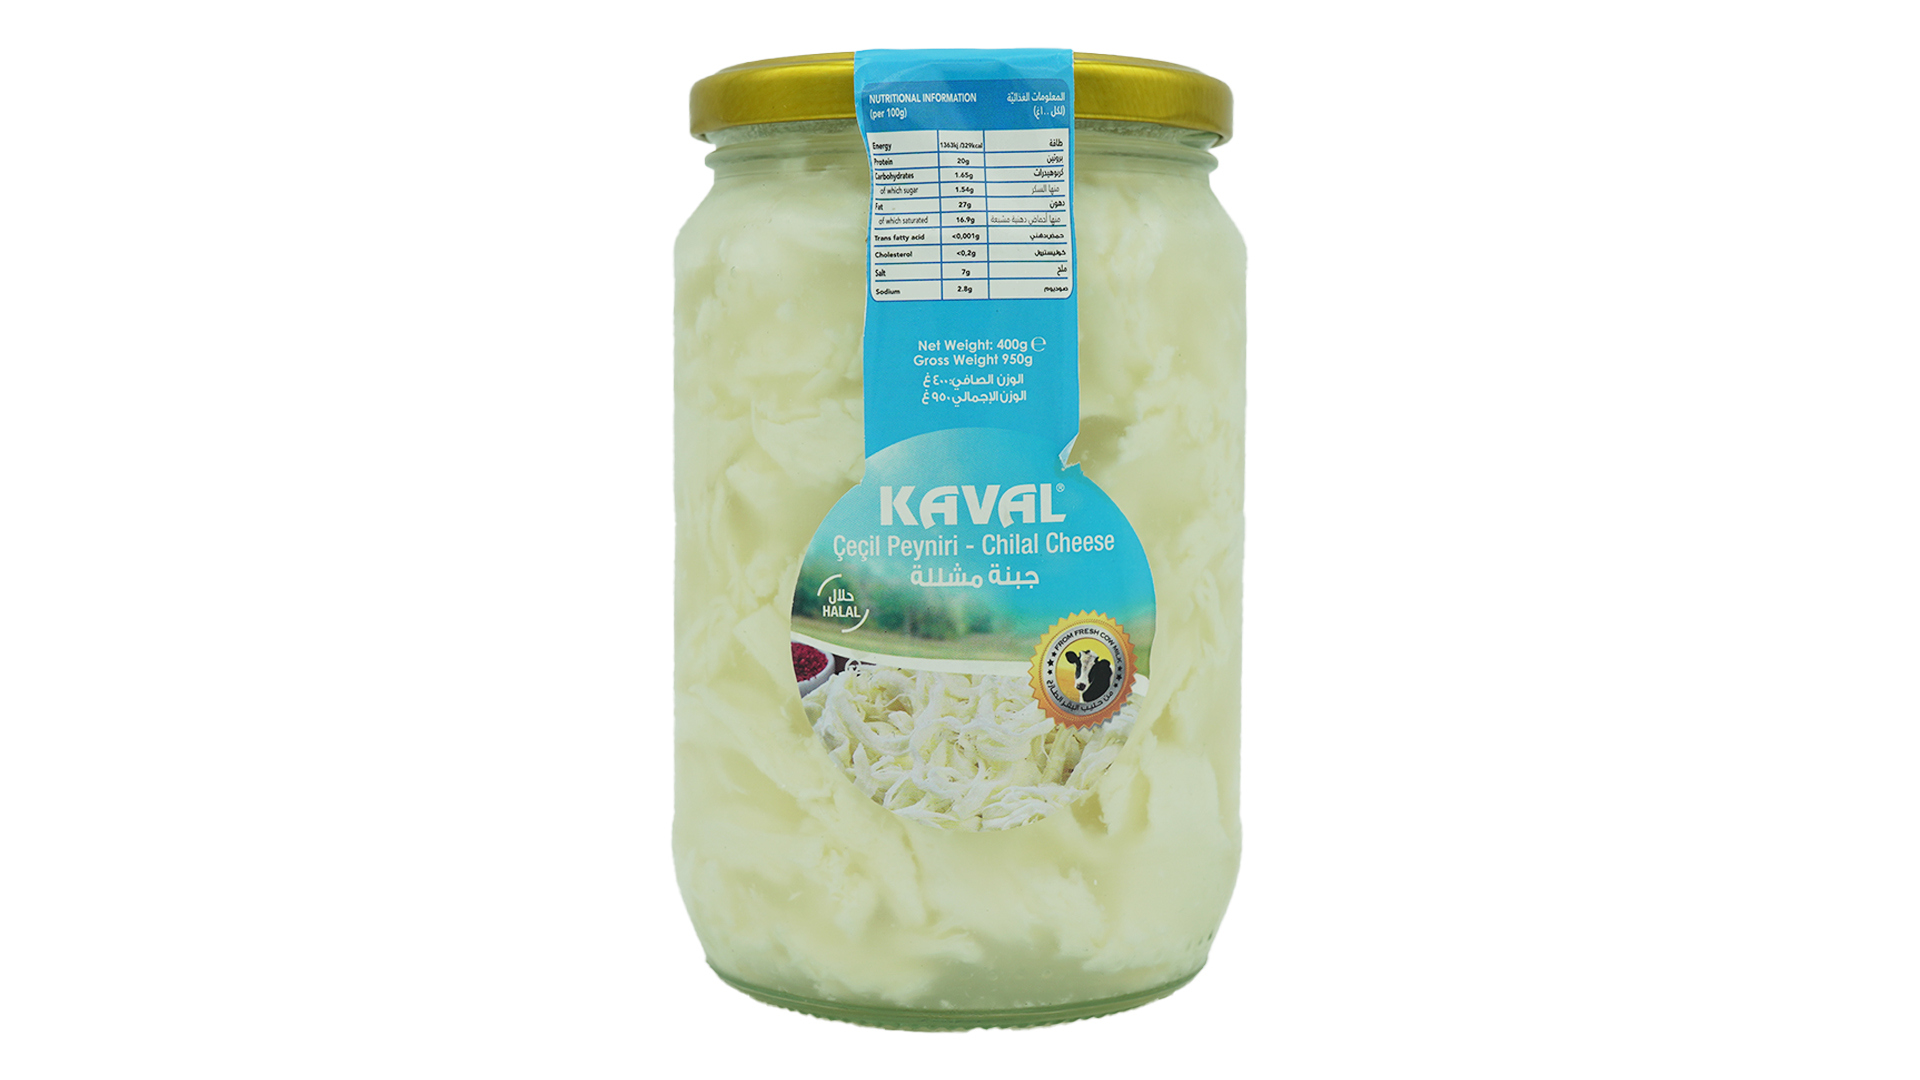 Kaval cecil peyniri chilal cheese 400g 2